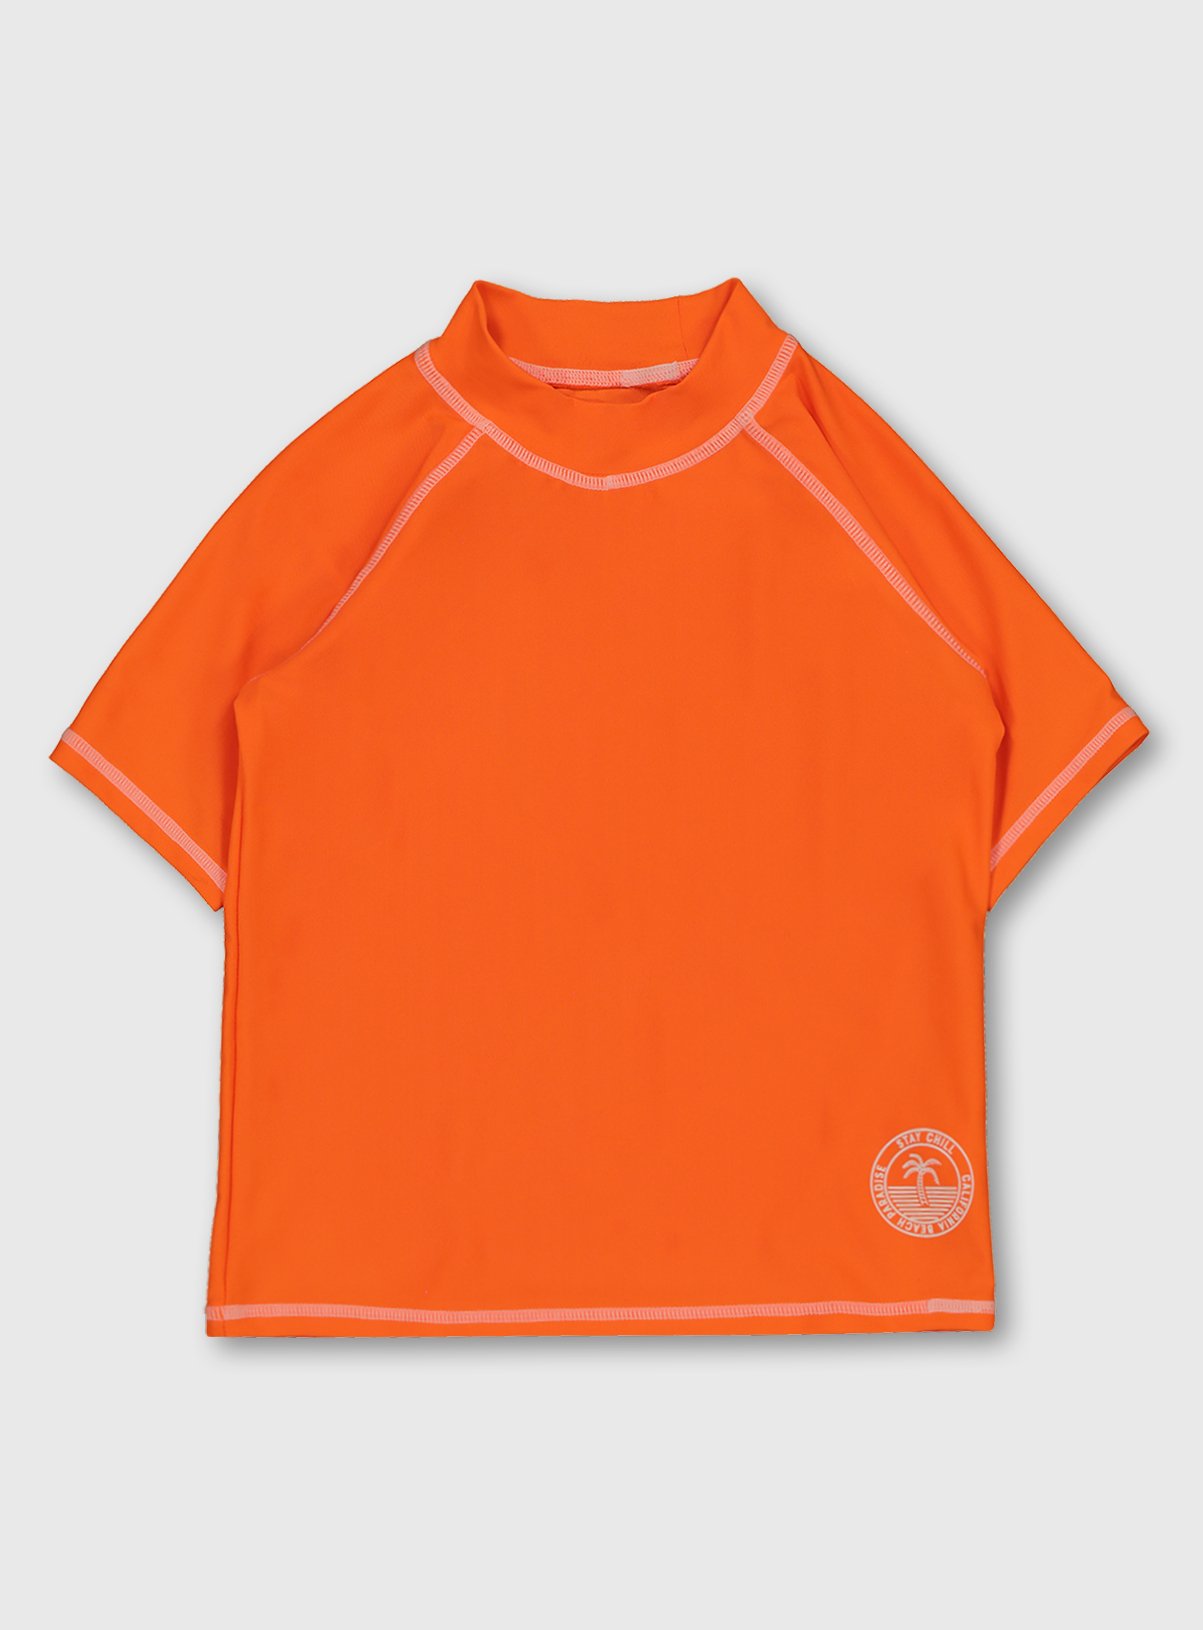 Orange Rash Vest Review